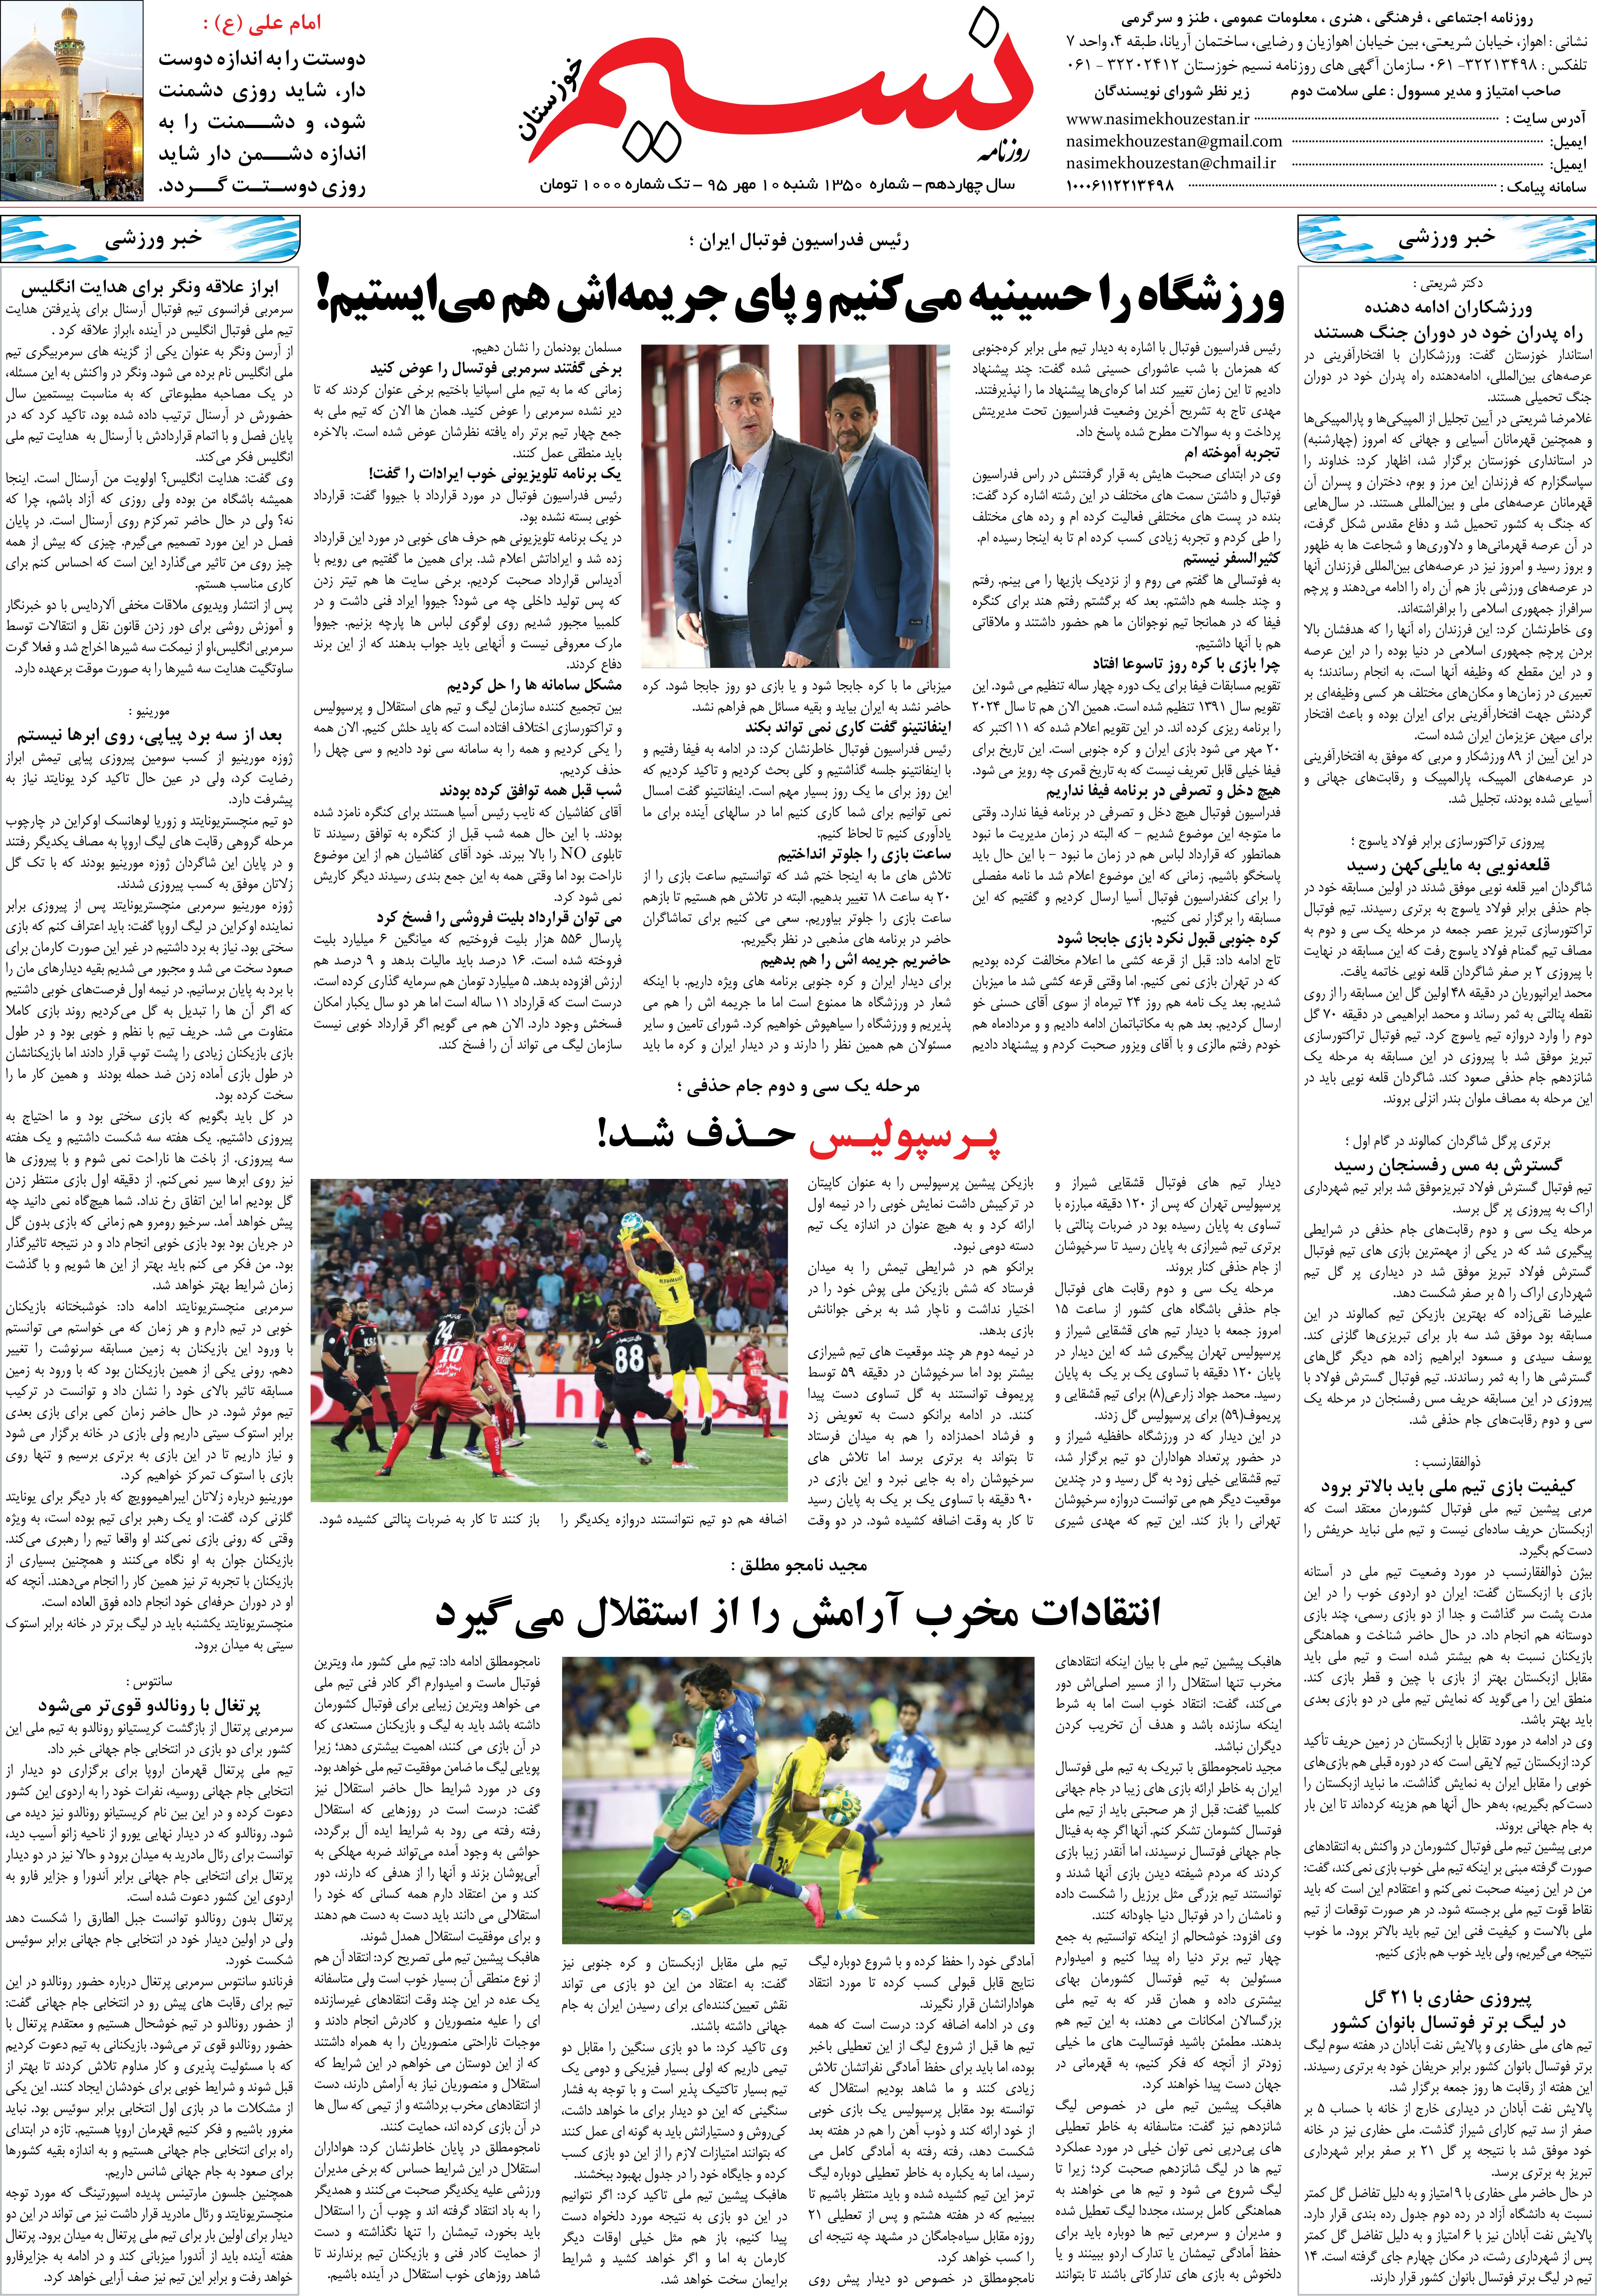 صفحه آخر روزنامه نسیم شماره 1350